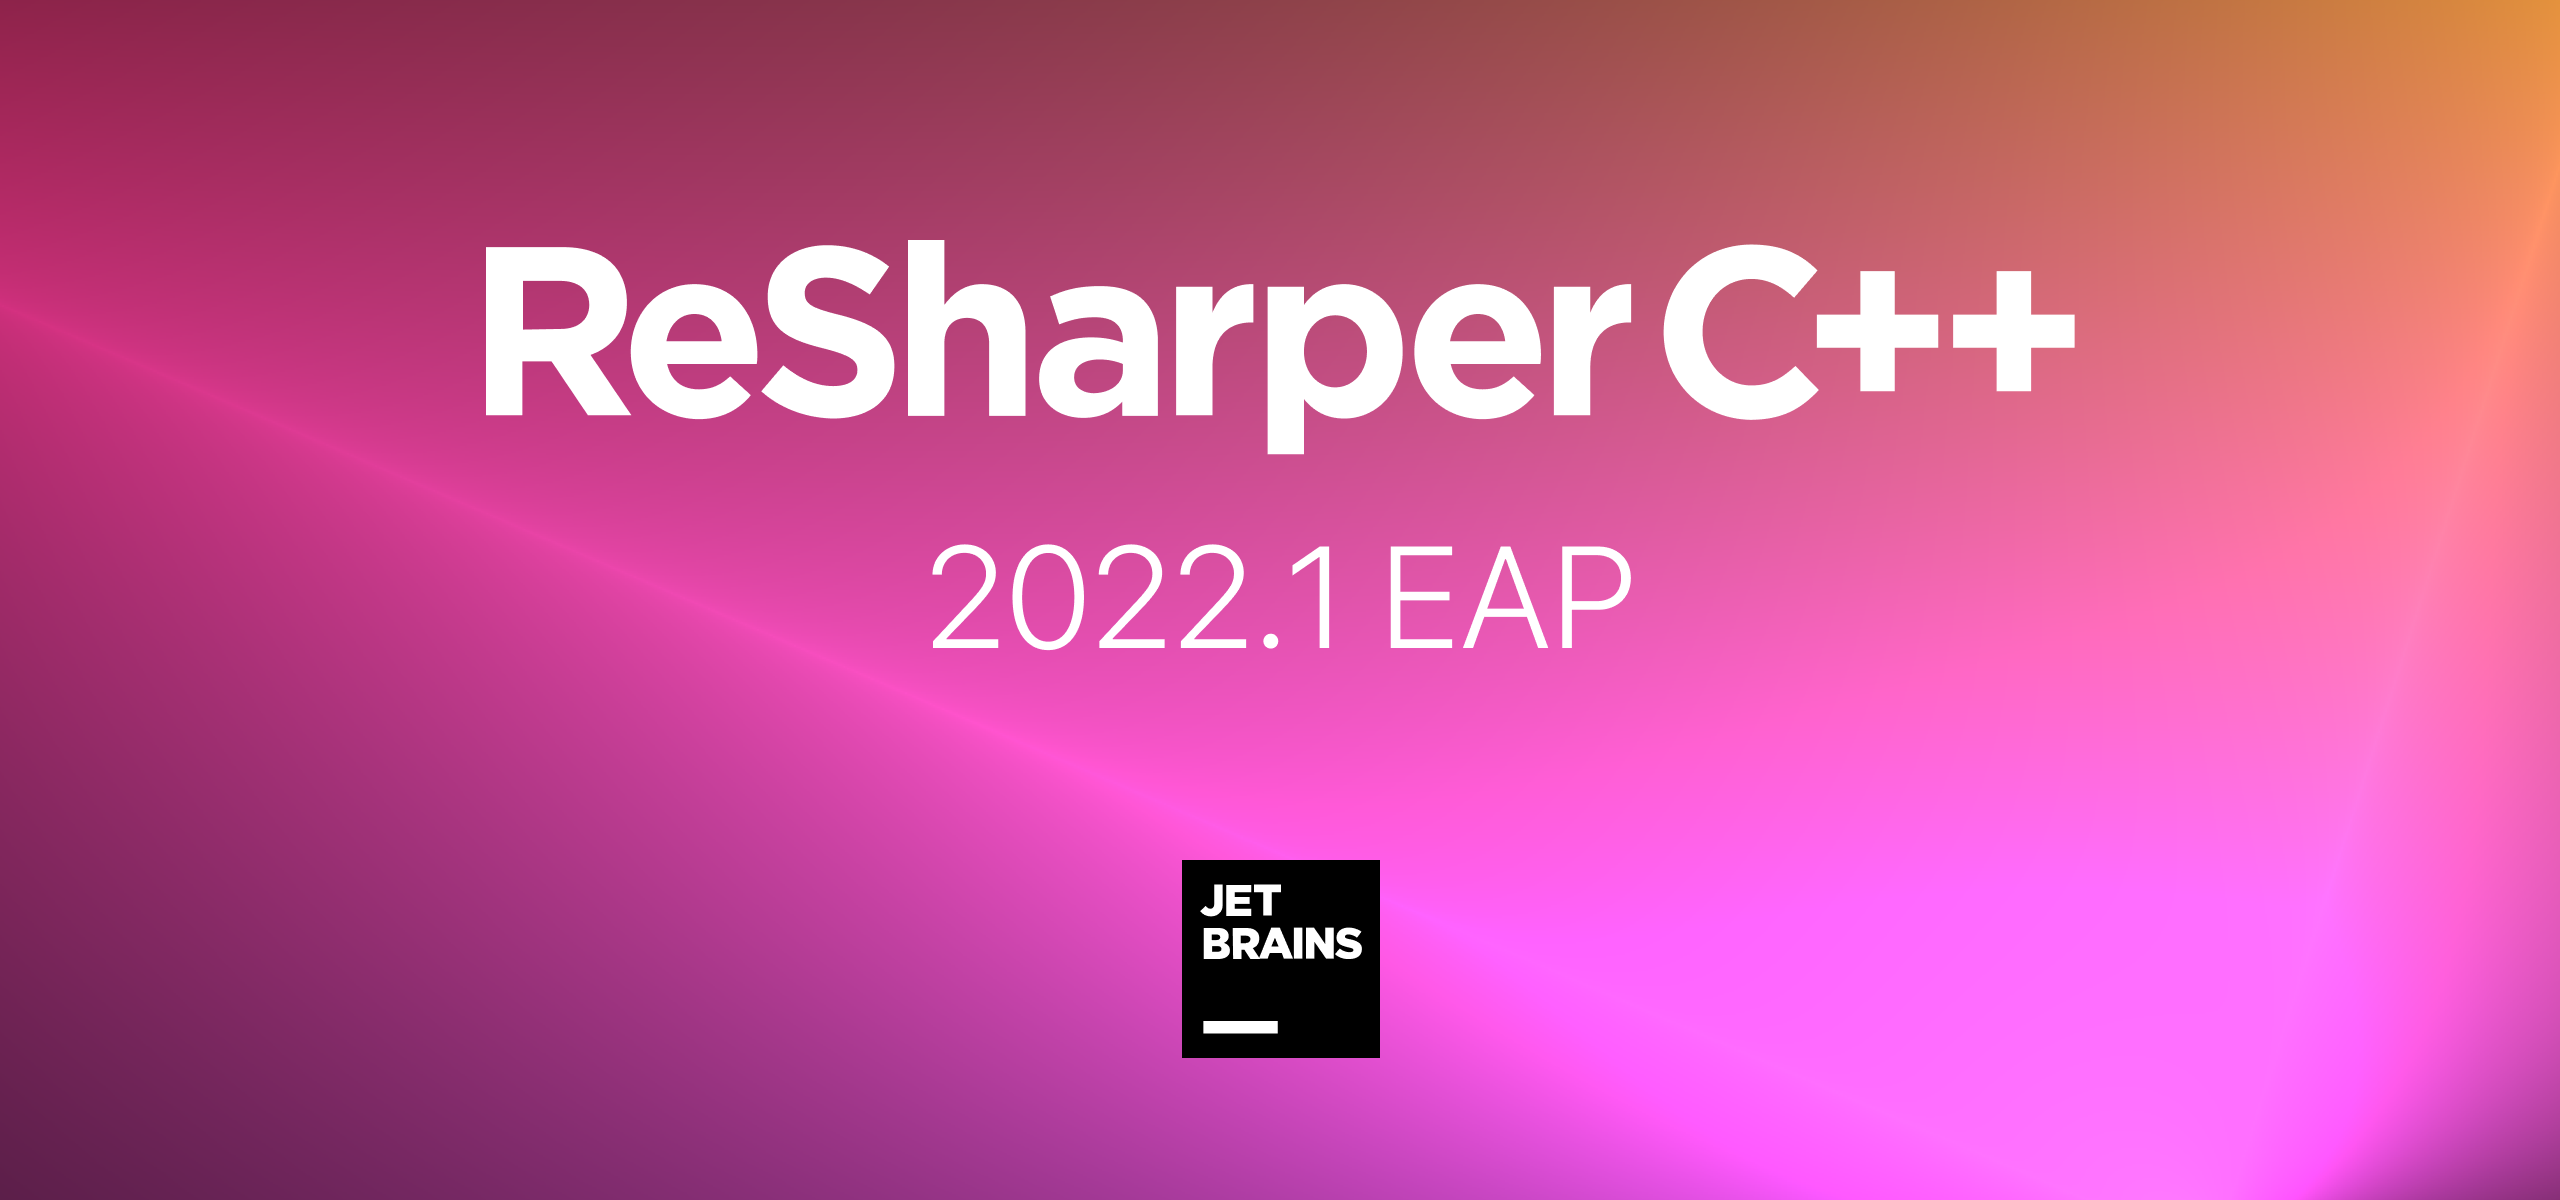 ReSharper C++ 2022.1 EAP